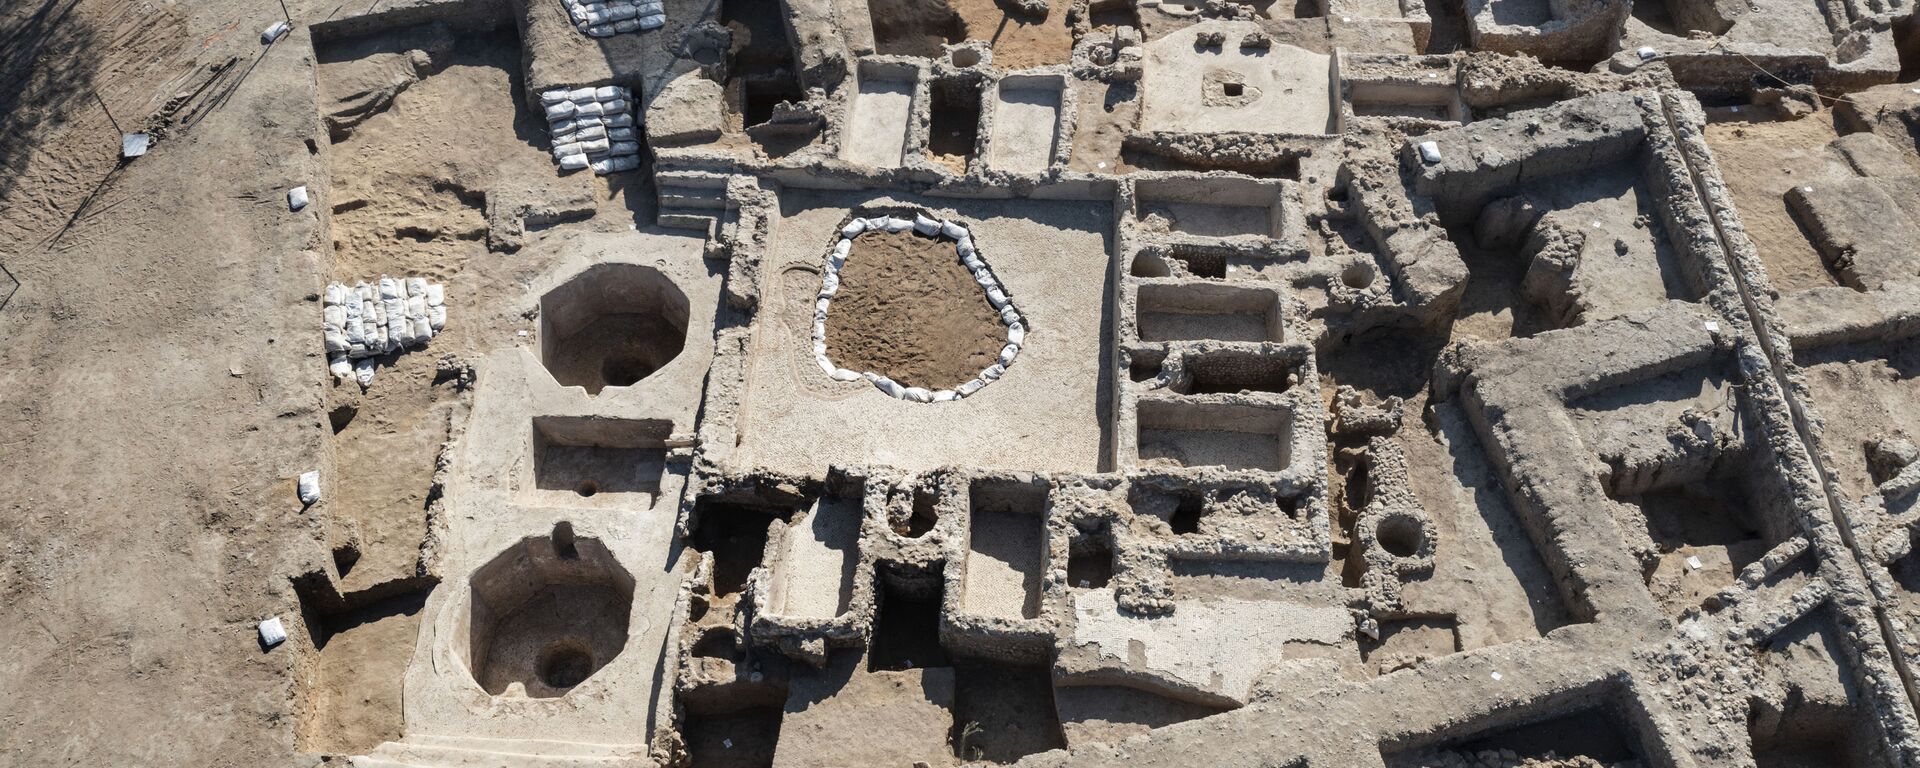 Древний винодельческий комплекс, построенный примерно 1500 лет назад в Явне, Израиль - Sputnik Mundo, 1920, 13.10.2021